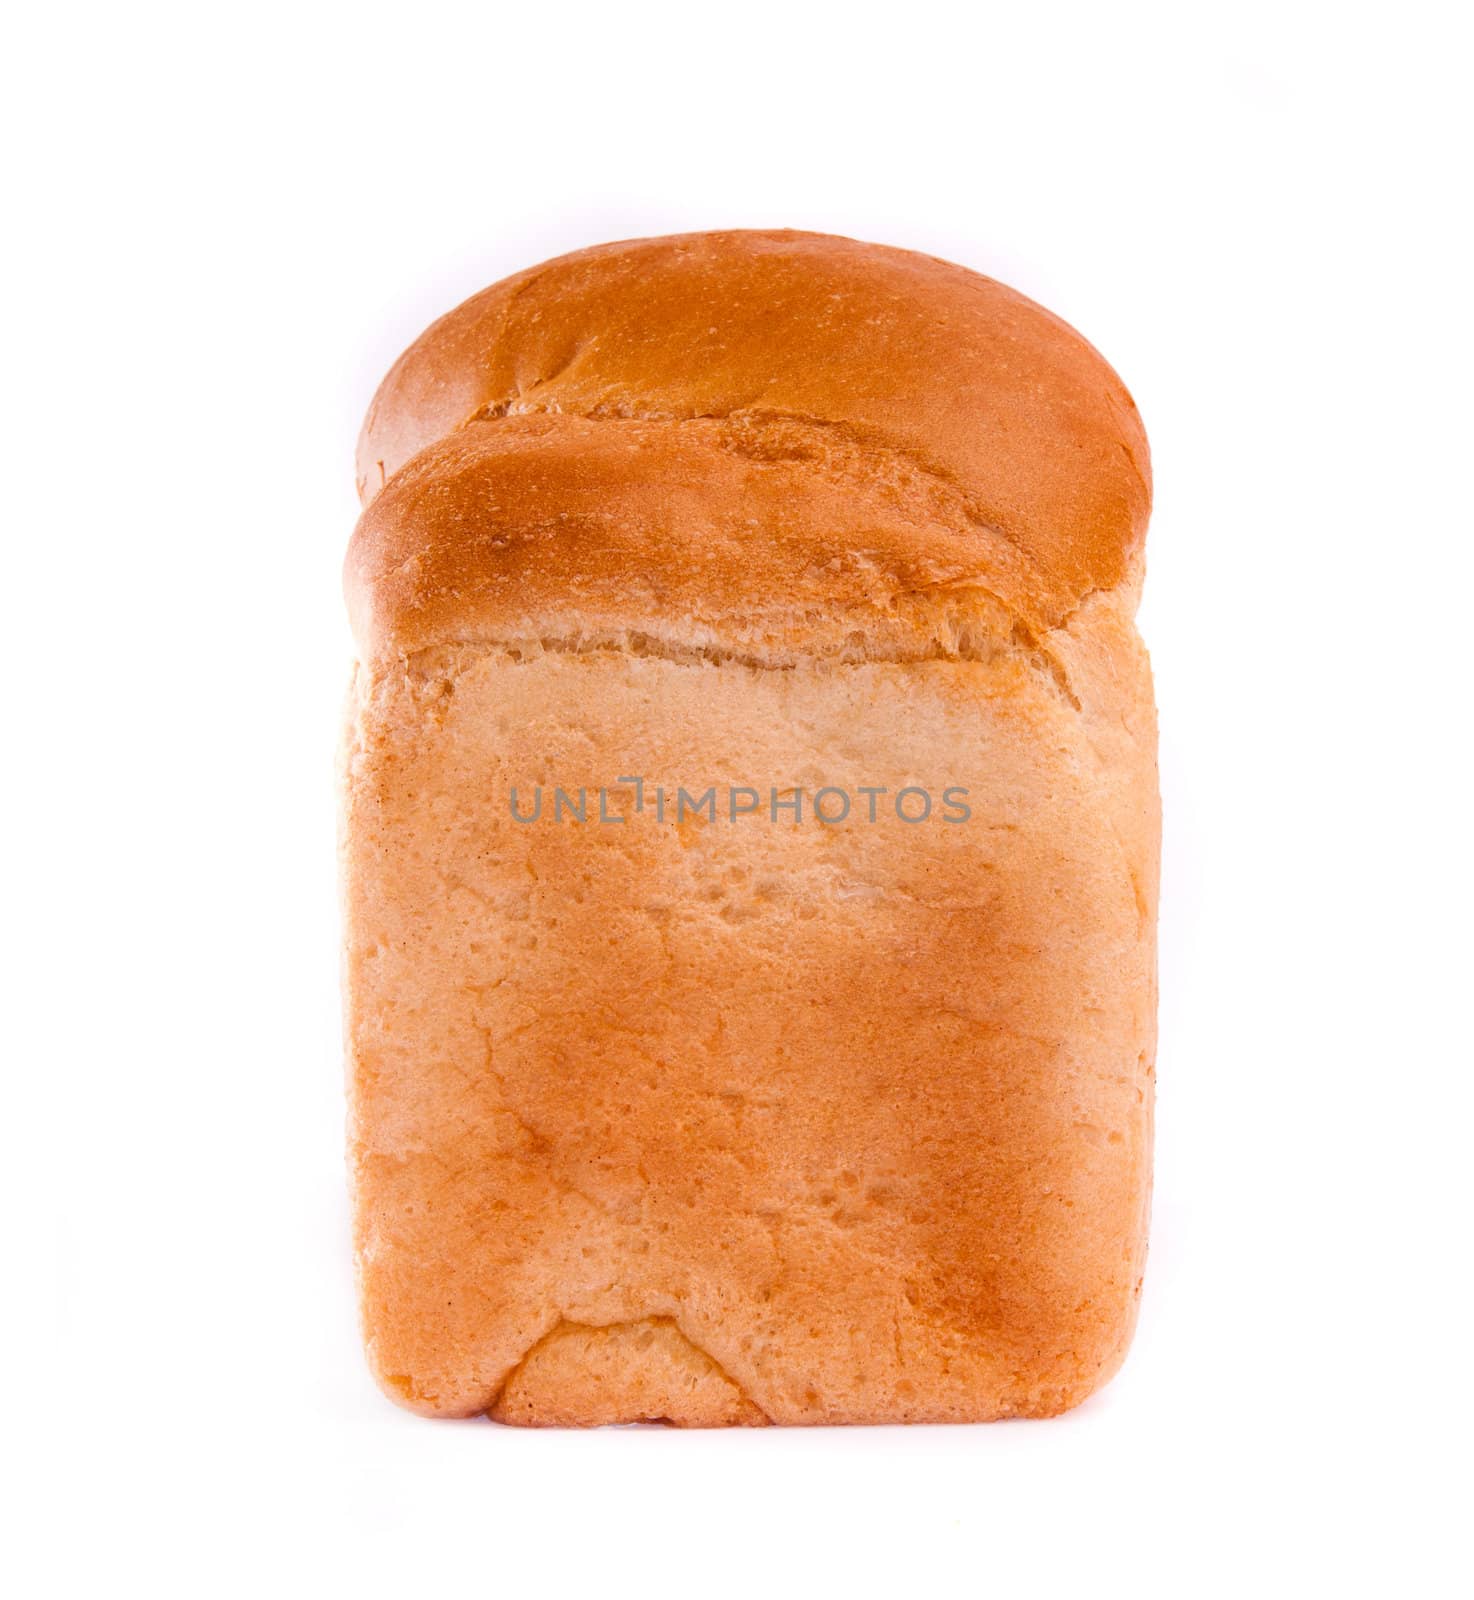 bread by GekaSkr